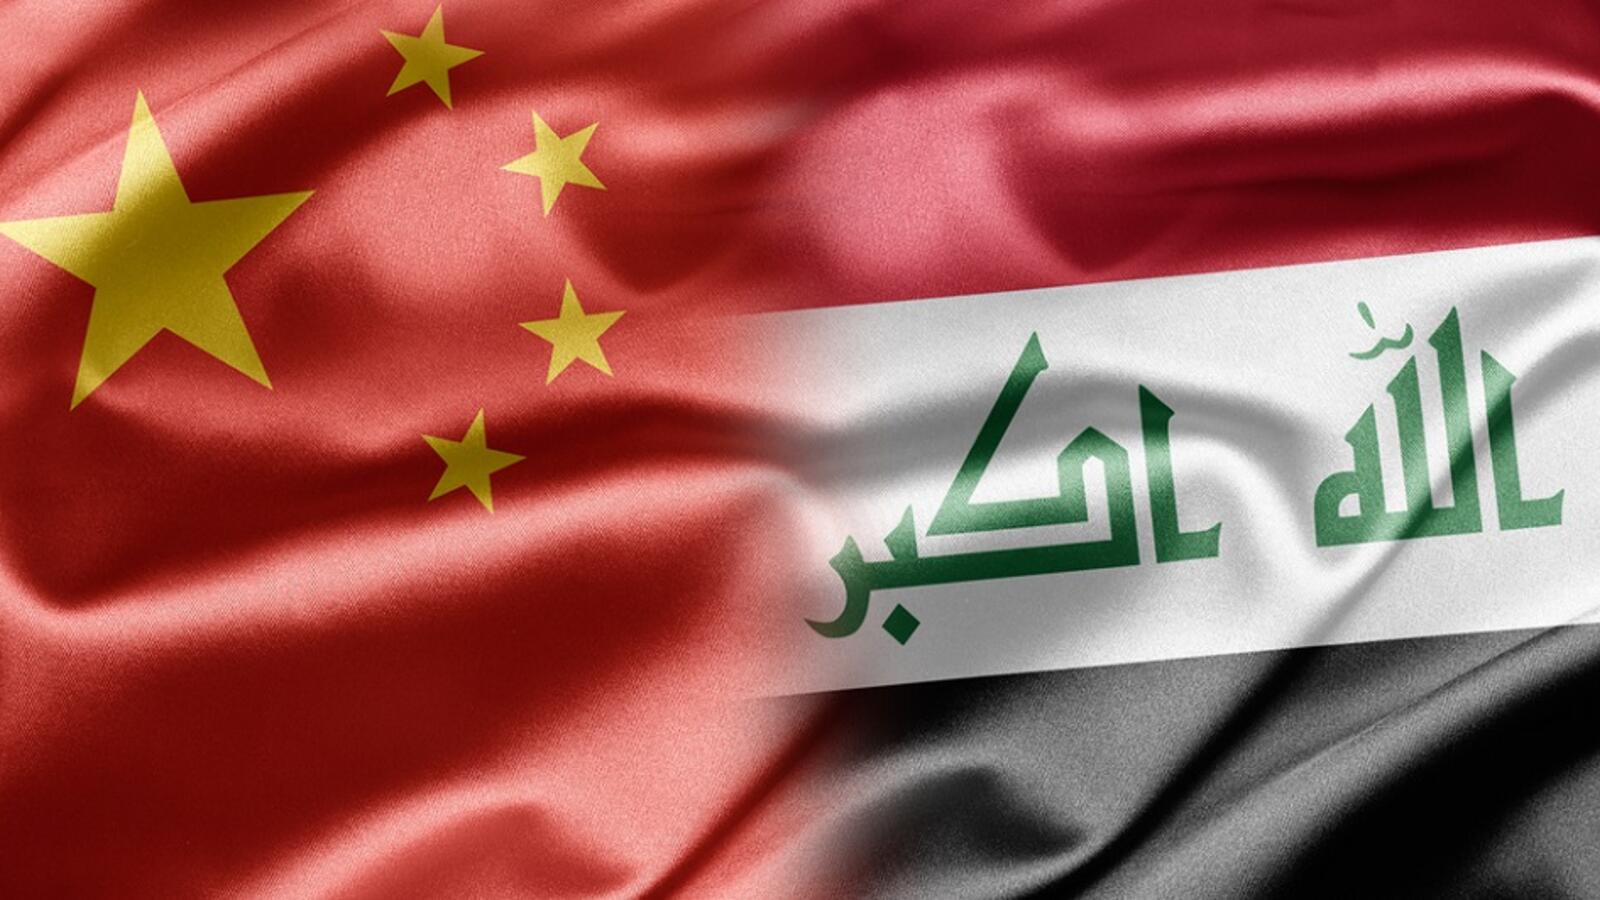 مستشار رئيس الوزراء العراقي يكشف تفاصيل جديدة بشأن الاتفاقية الصينية